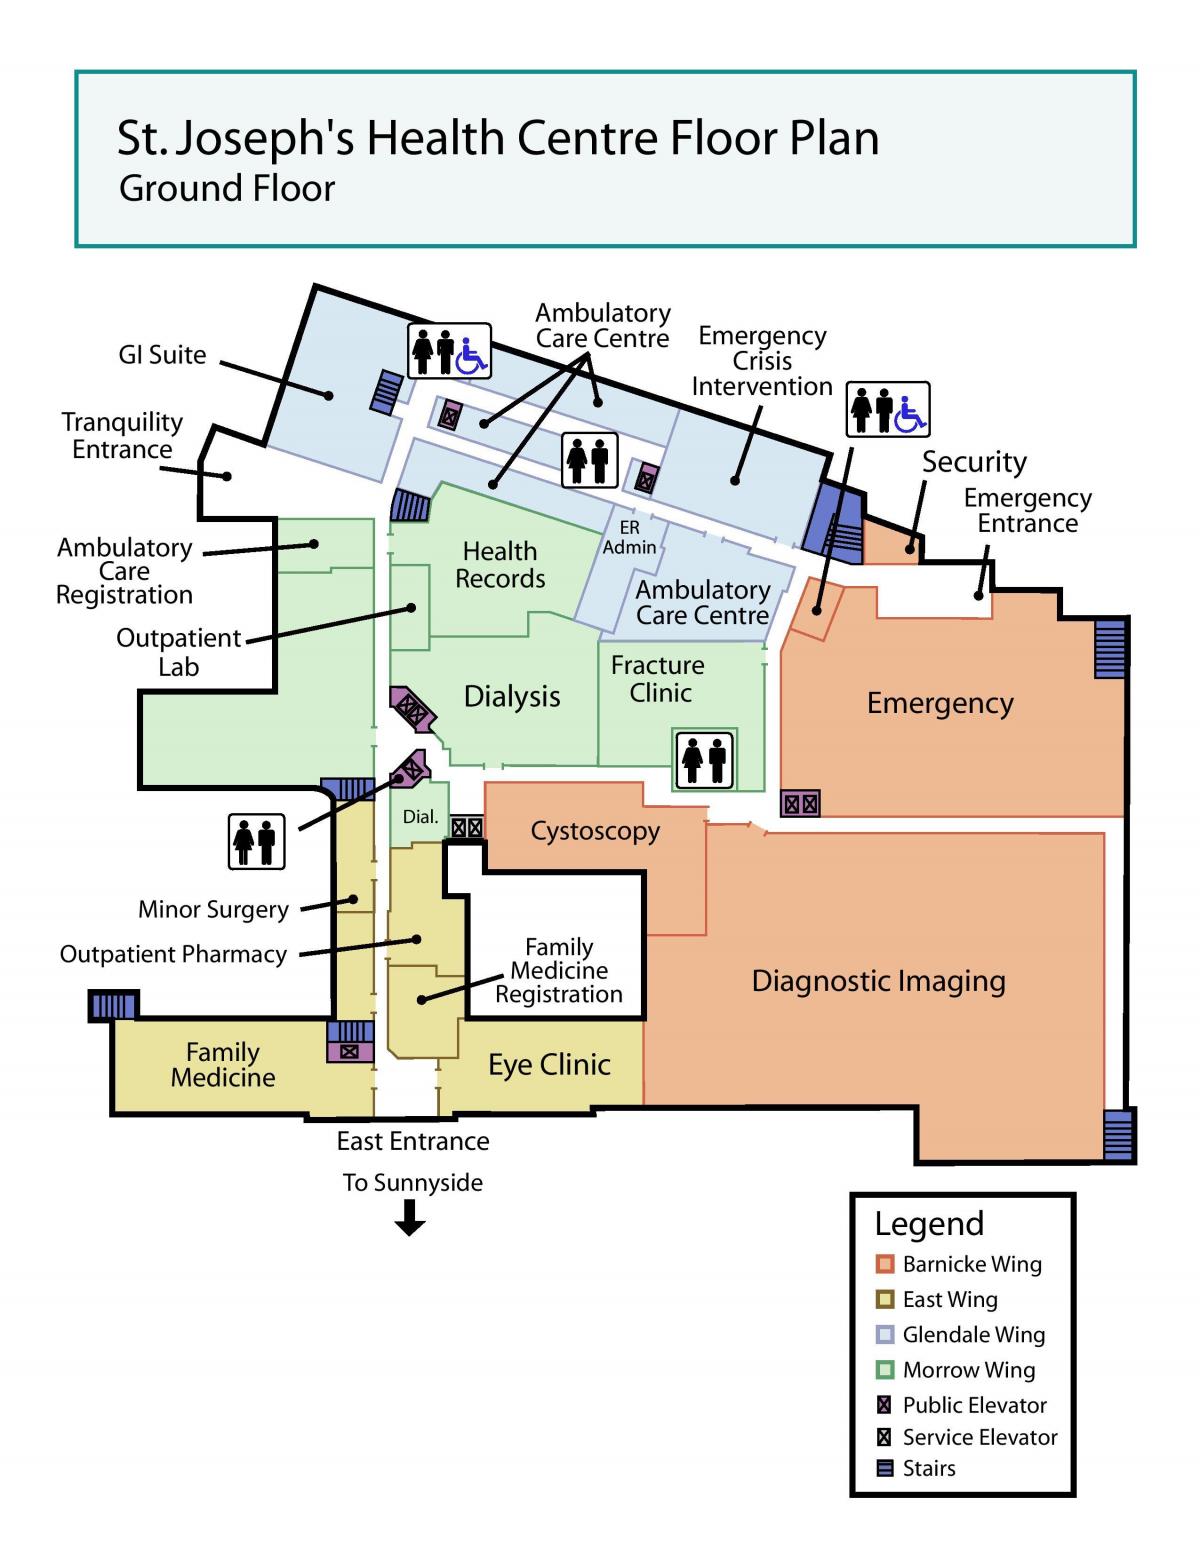 नक्शे के सेंट जोसेफ स्वास्थ्य केंद्र ग्राउंड फ्लोर